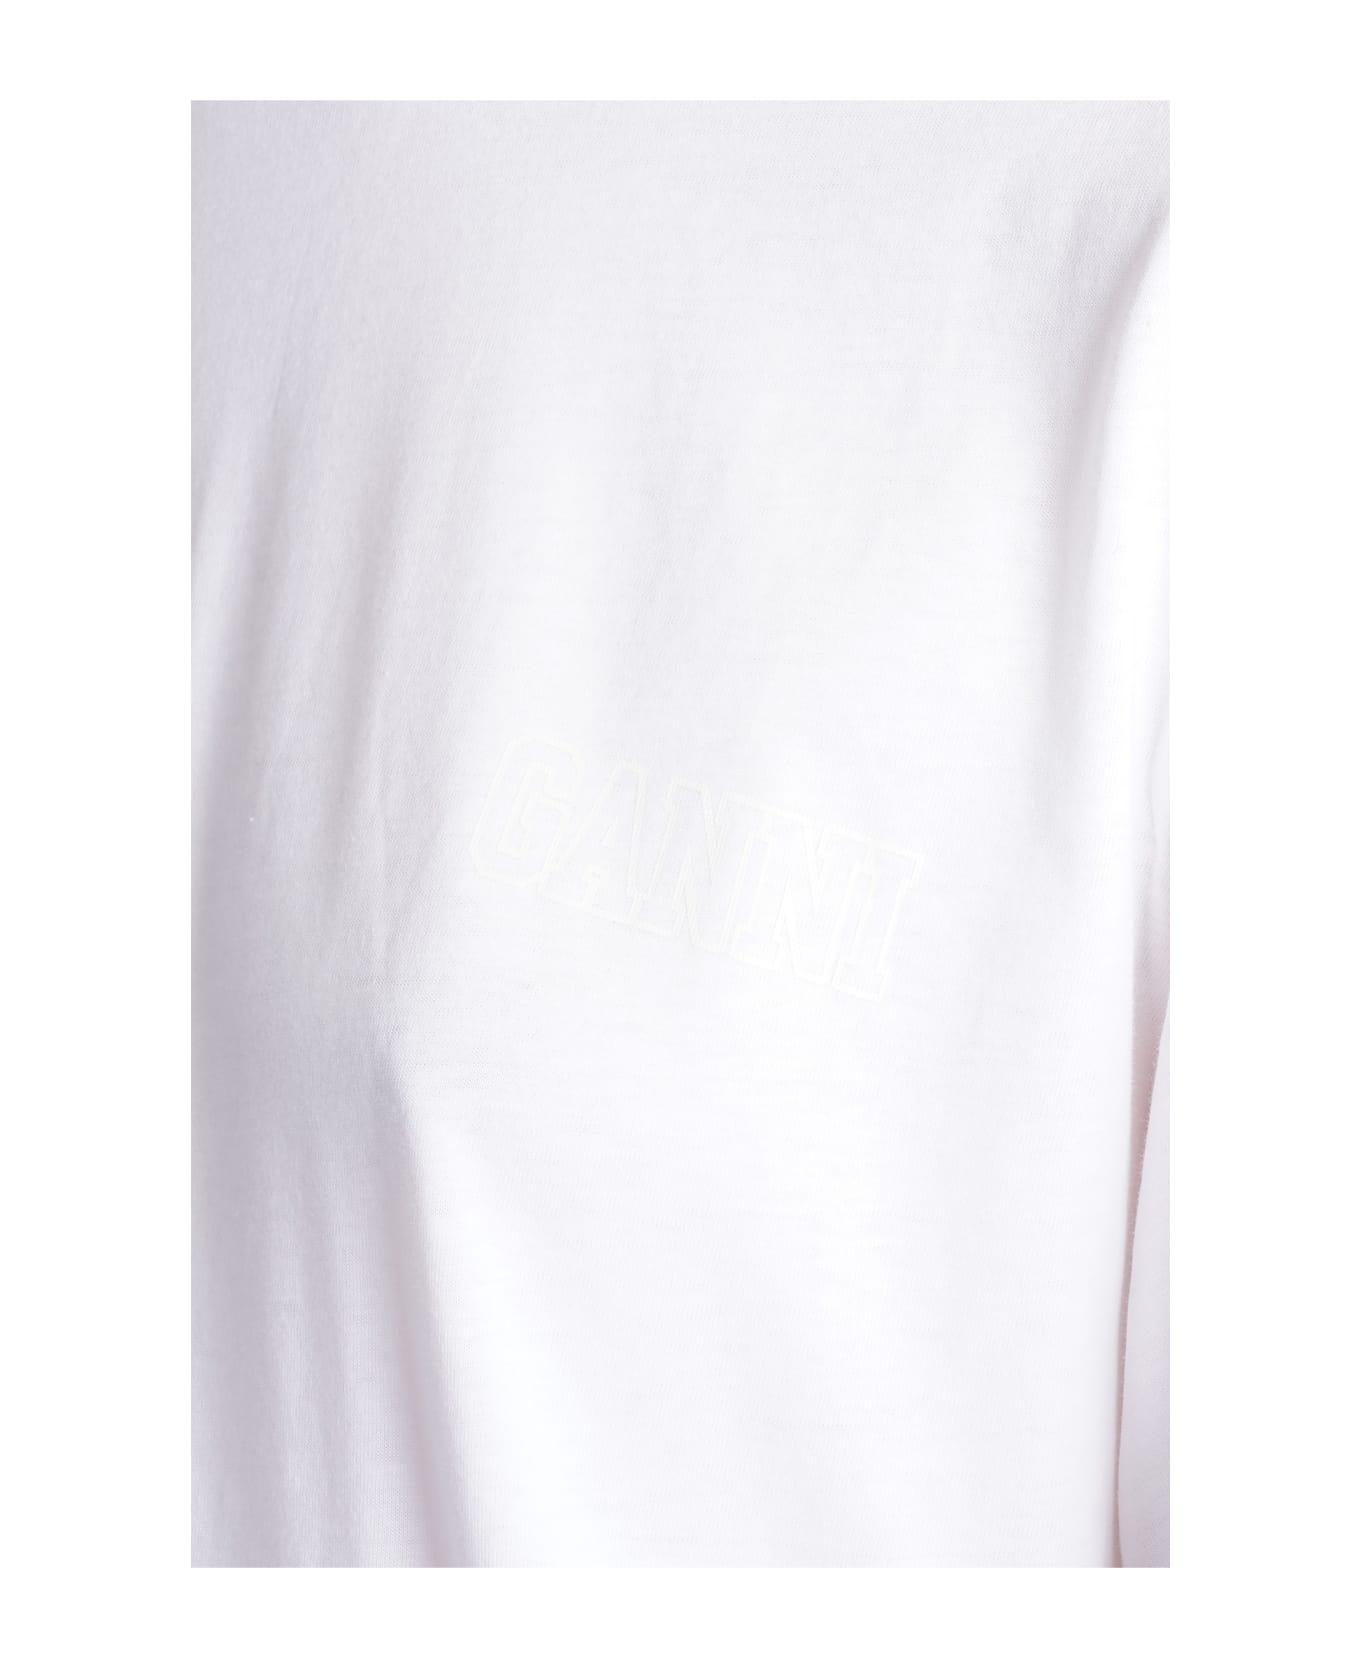 Ganni White Organic Cotton T-shirt - white